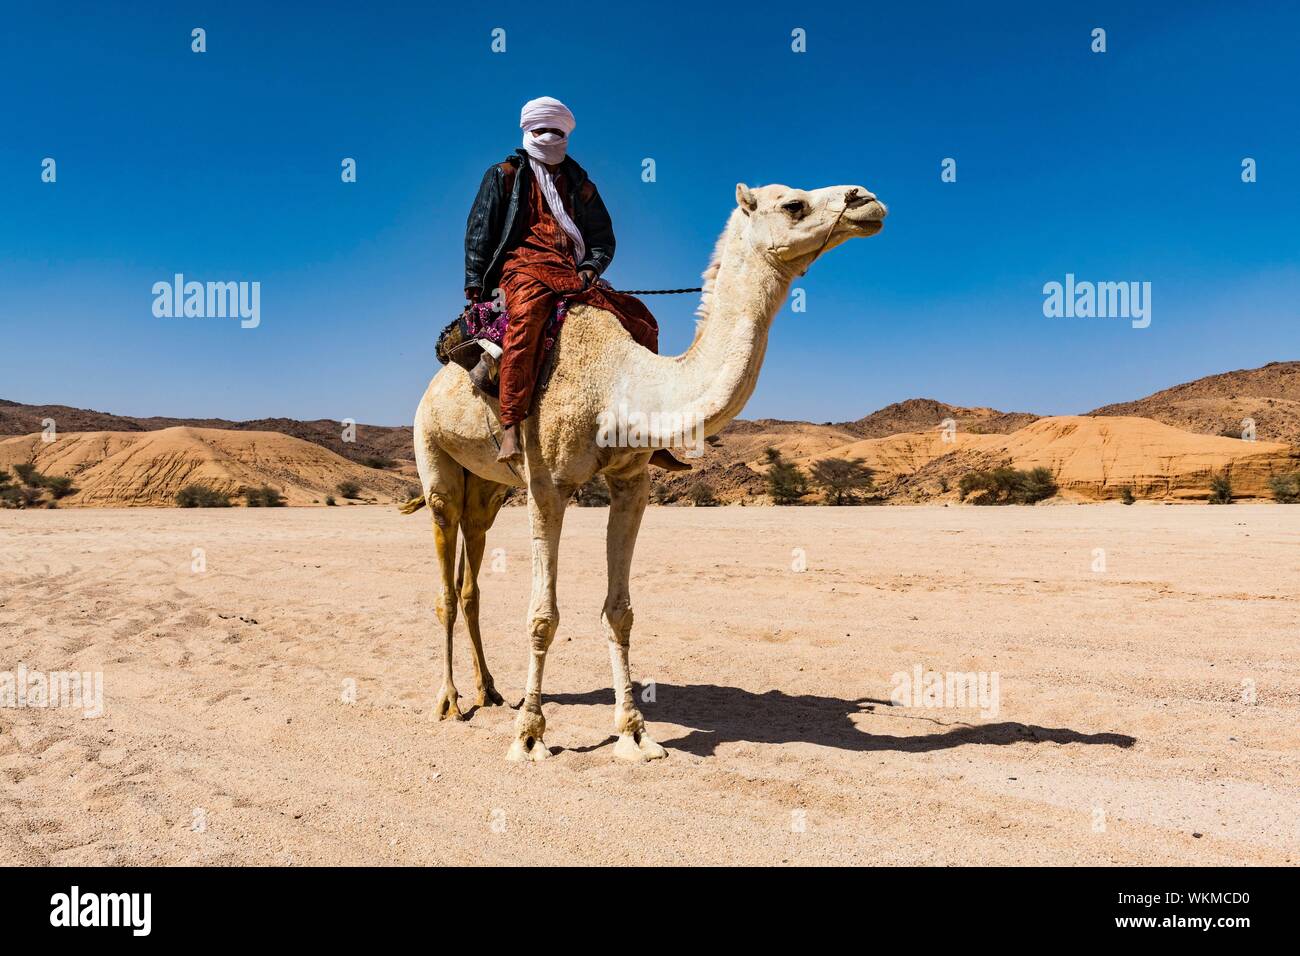 Équitation touareg sur son chameau d'arabie, près de Tamanrasset, Algérie Banque D'Images